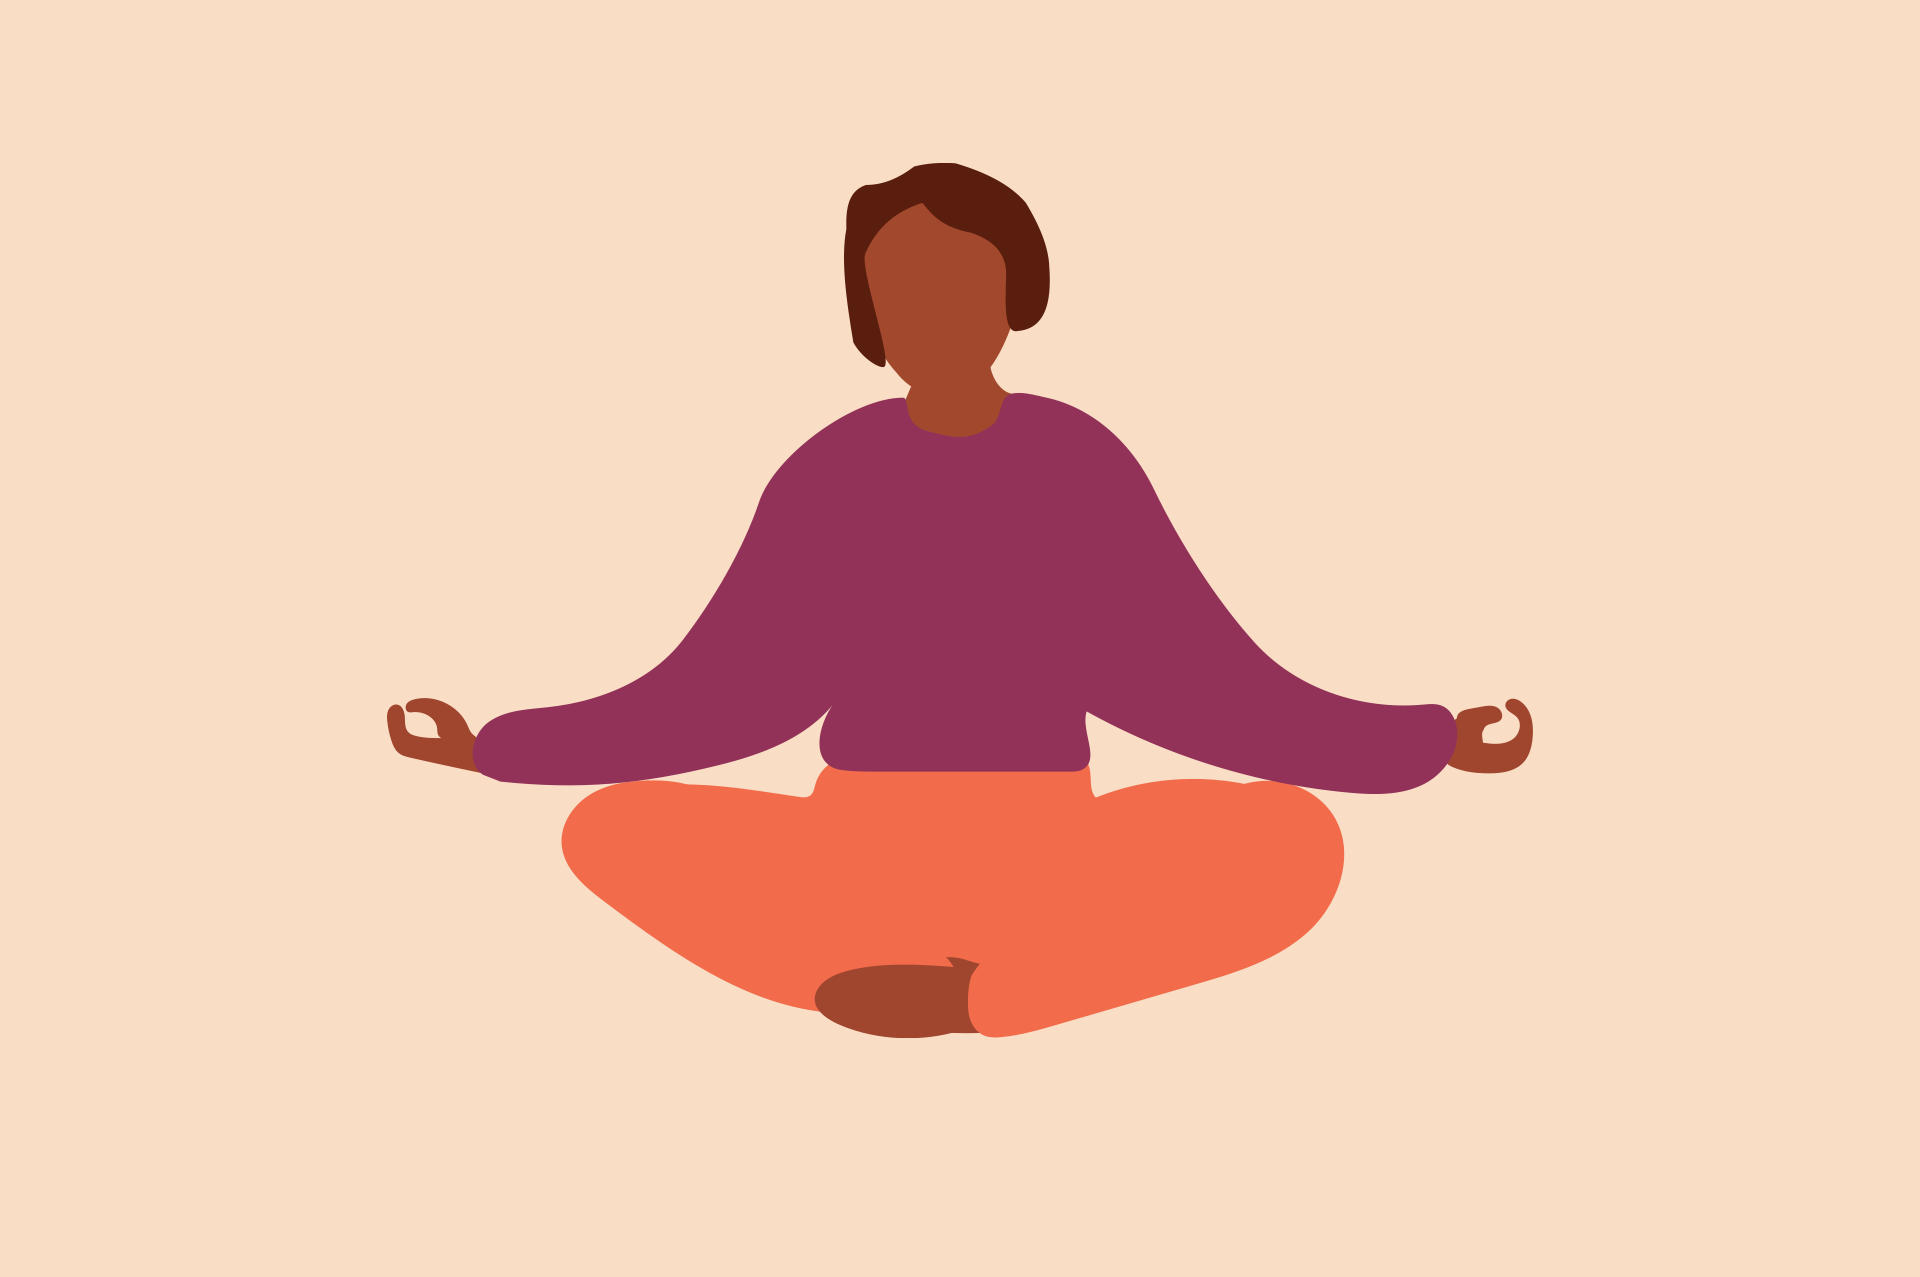 En illustration som föreställer en person som gör yoga